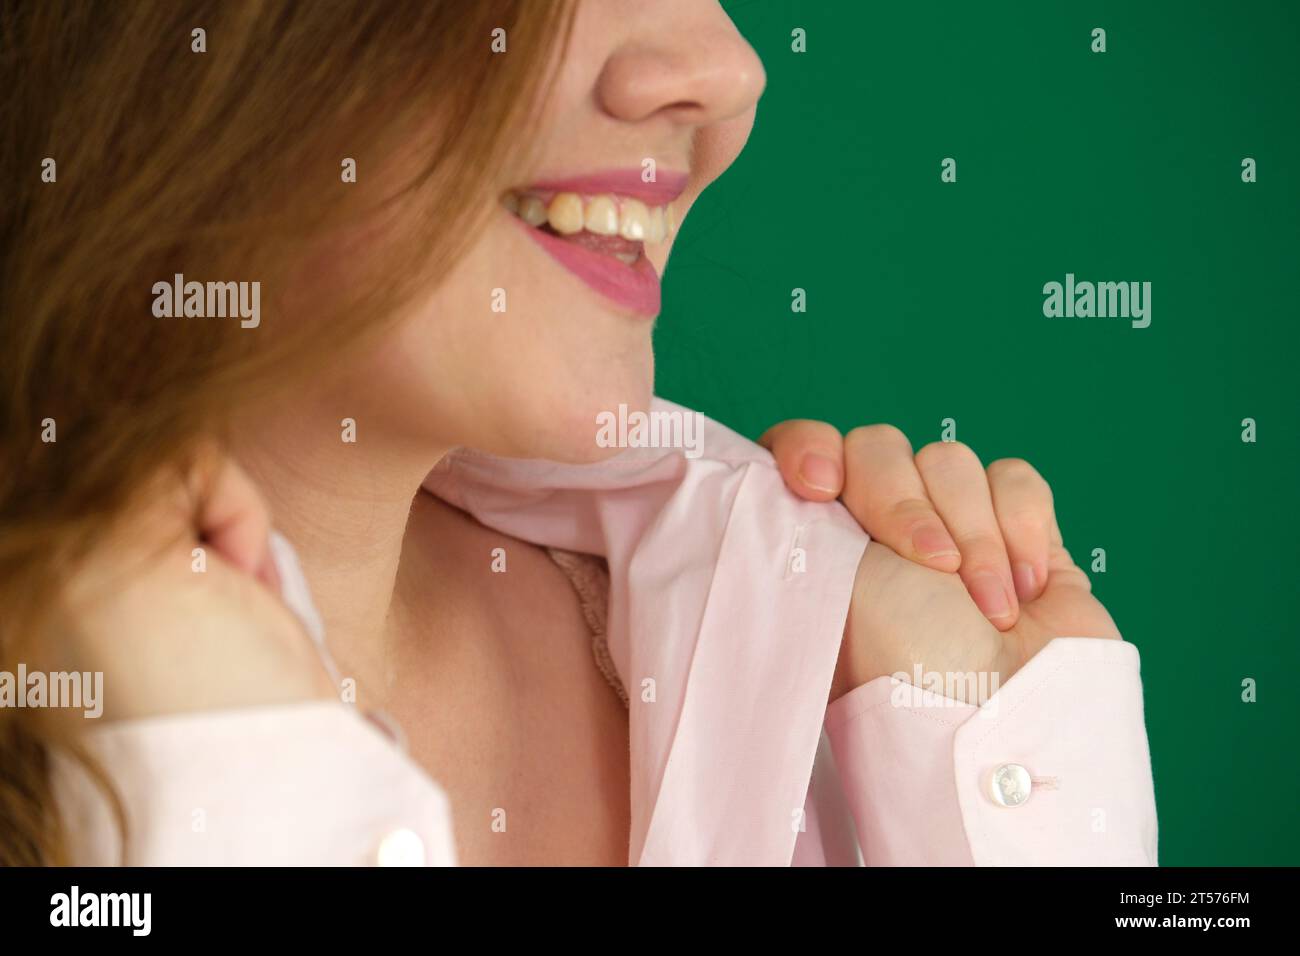 Giovane donna che indossa una camicia bianca che regge il colletto. Foto di alta qualità Foto Stock